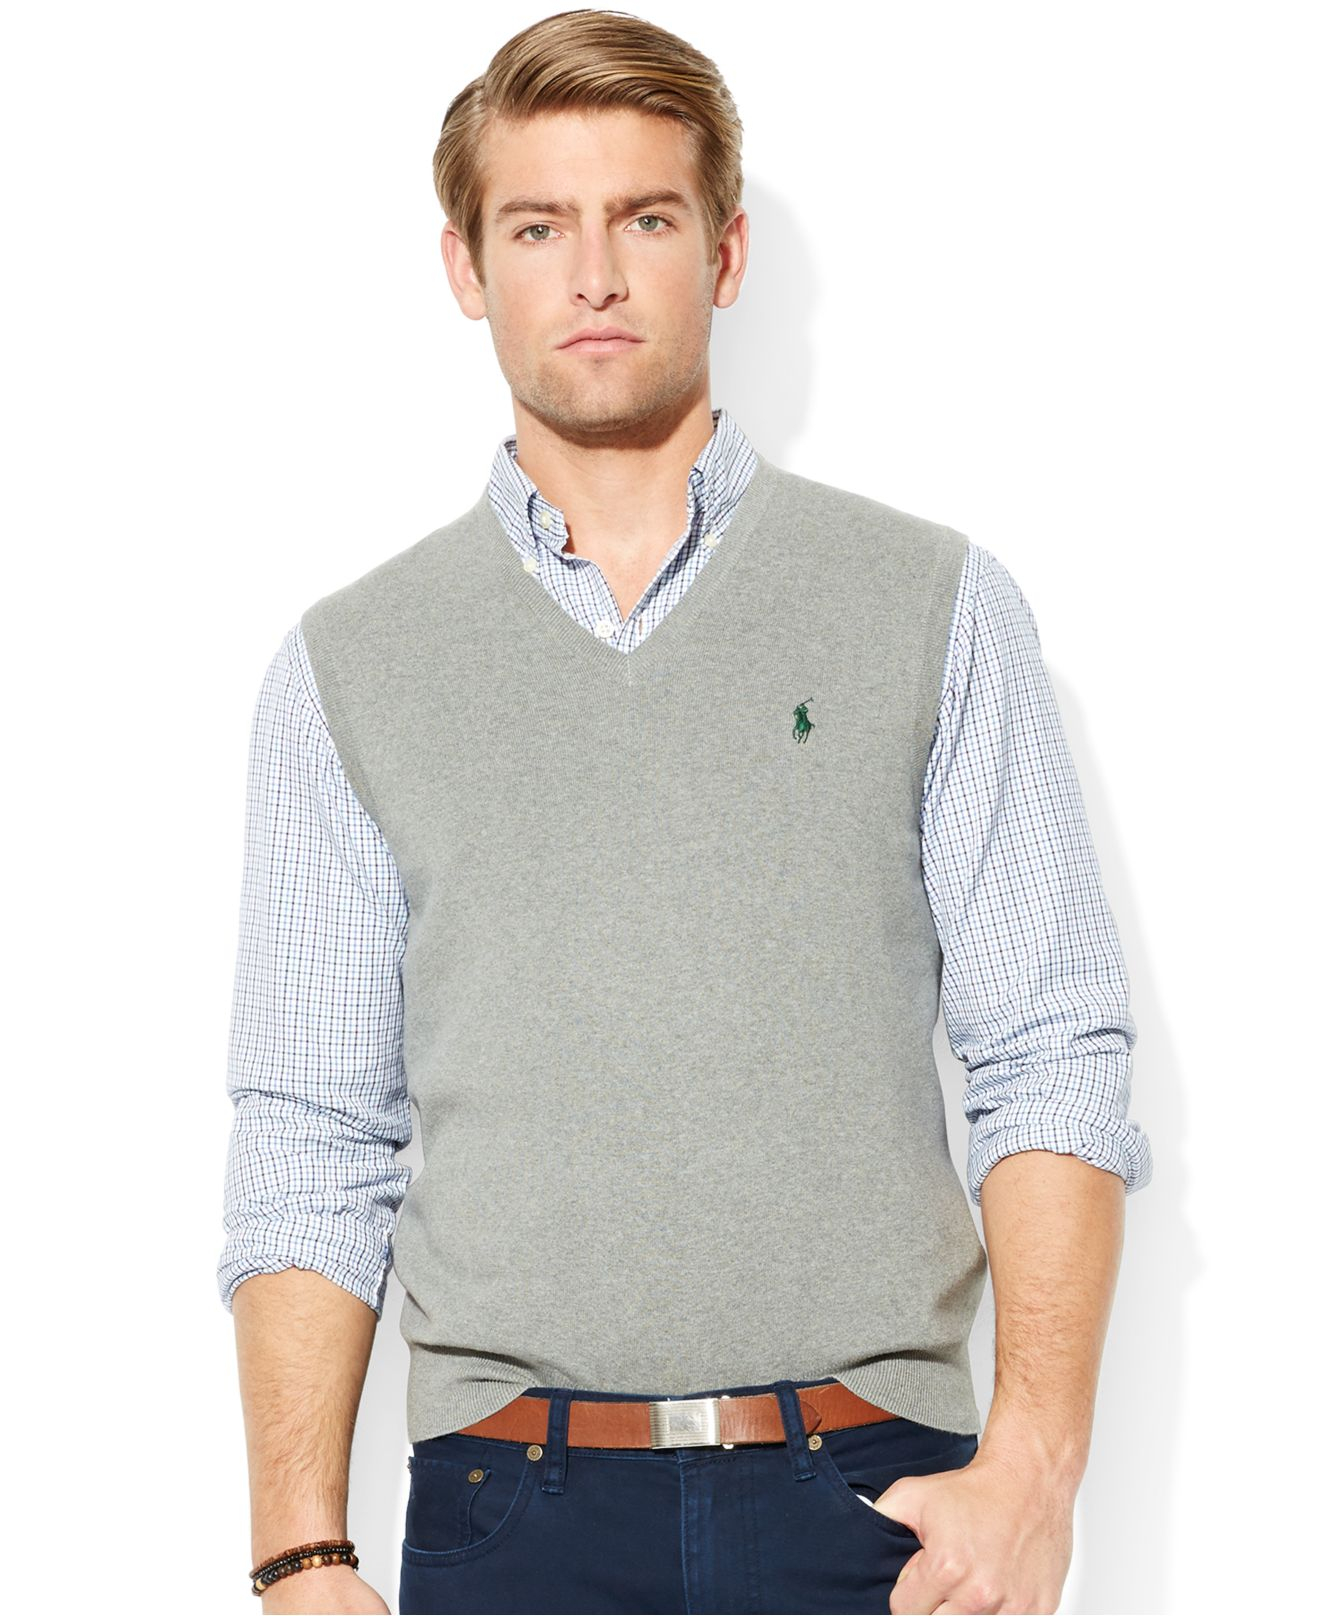 Lyst - Polo ralph lauren Pima-cotton V-neck Vest in Gray for Men